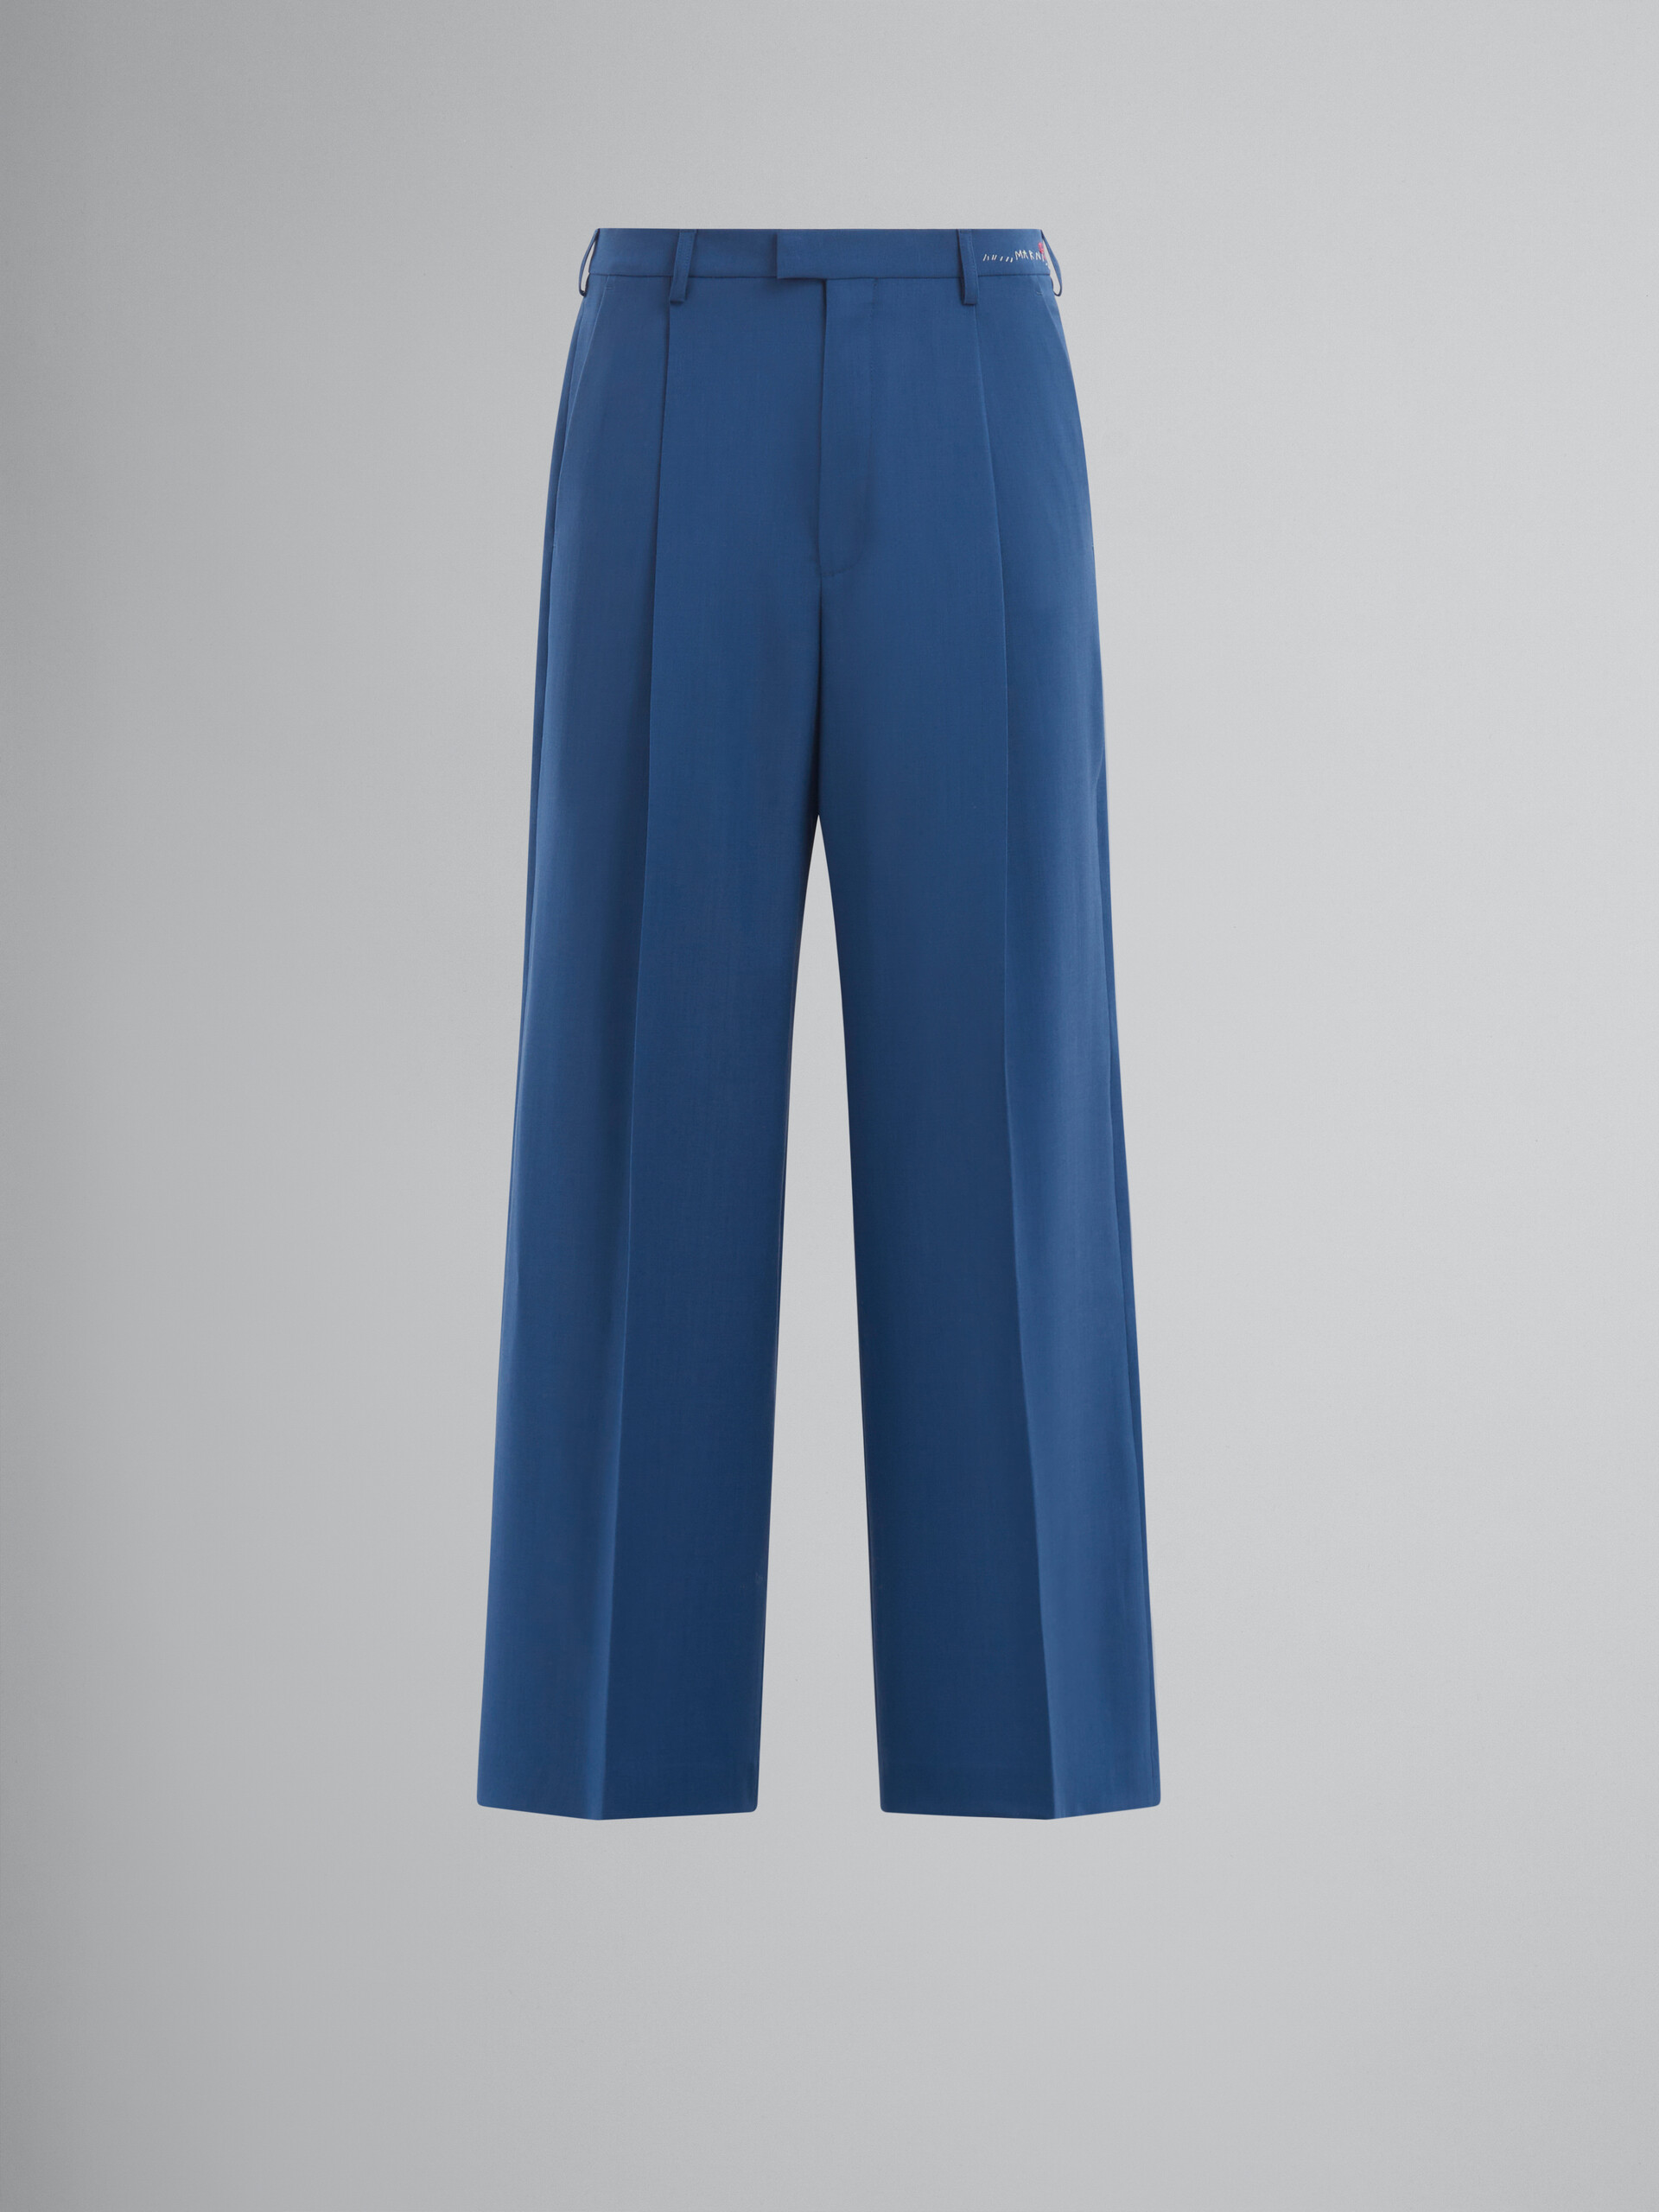 Pantalones azules de lana y mohair con pliegues - Pantalones - Image 1